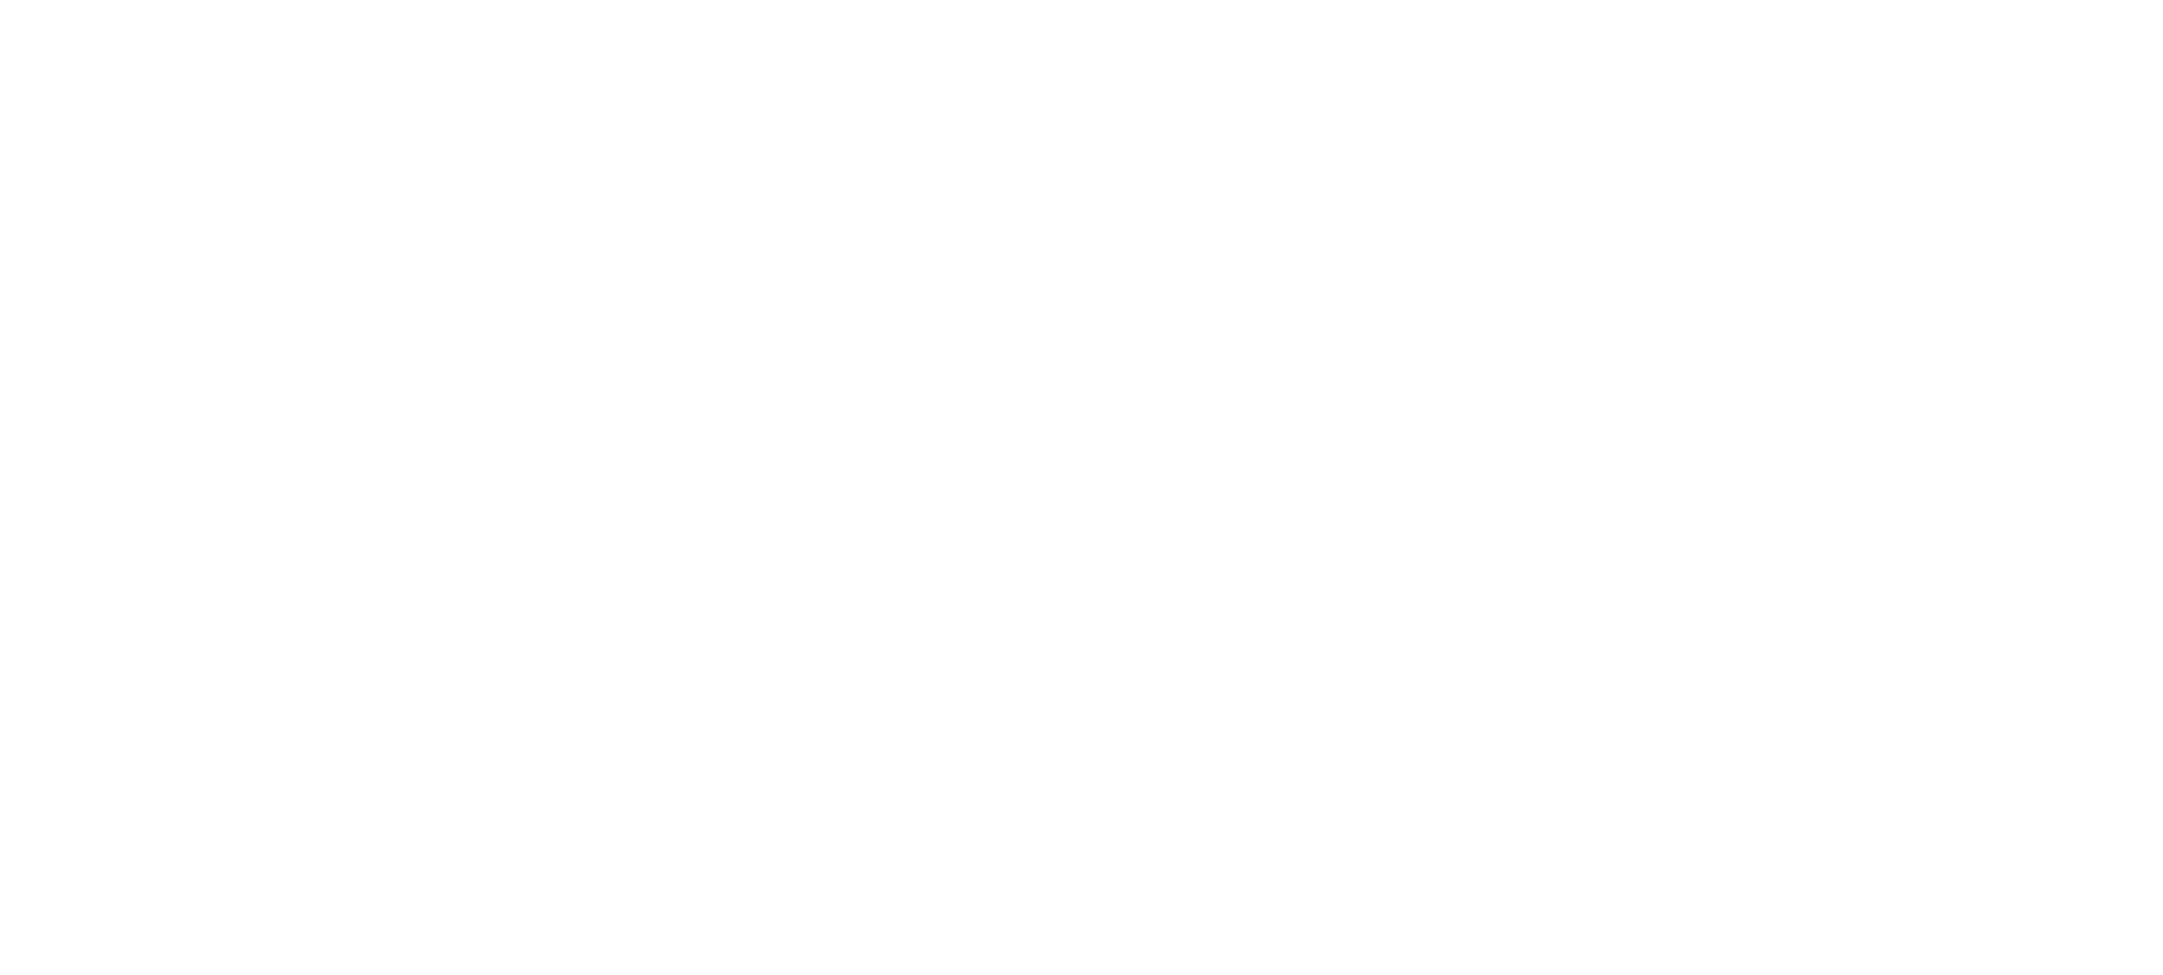 Beechboard